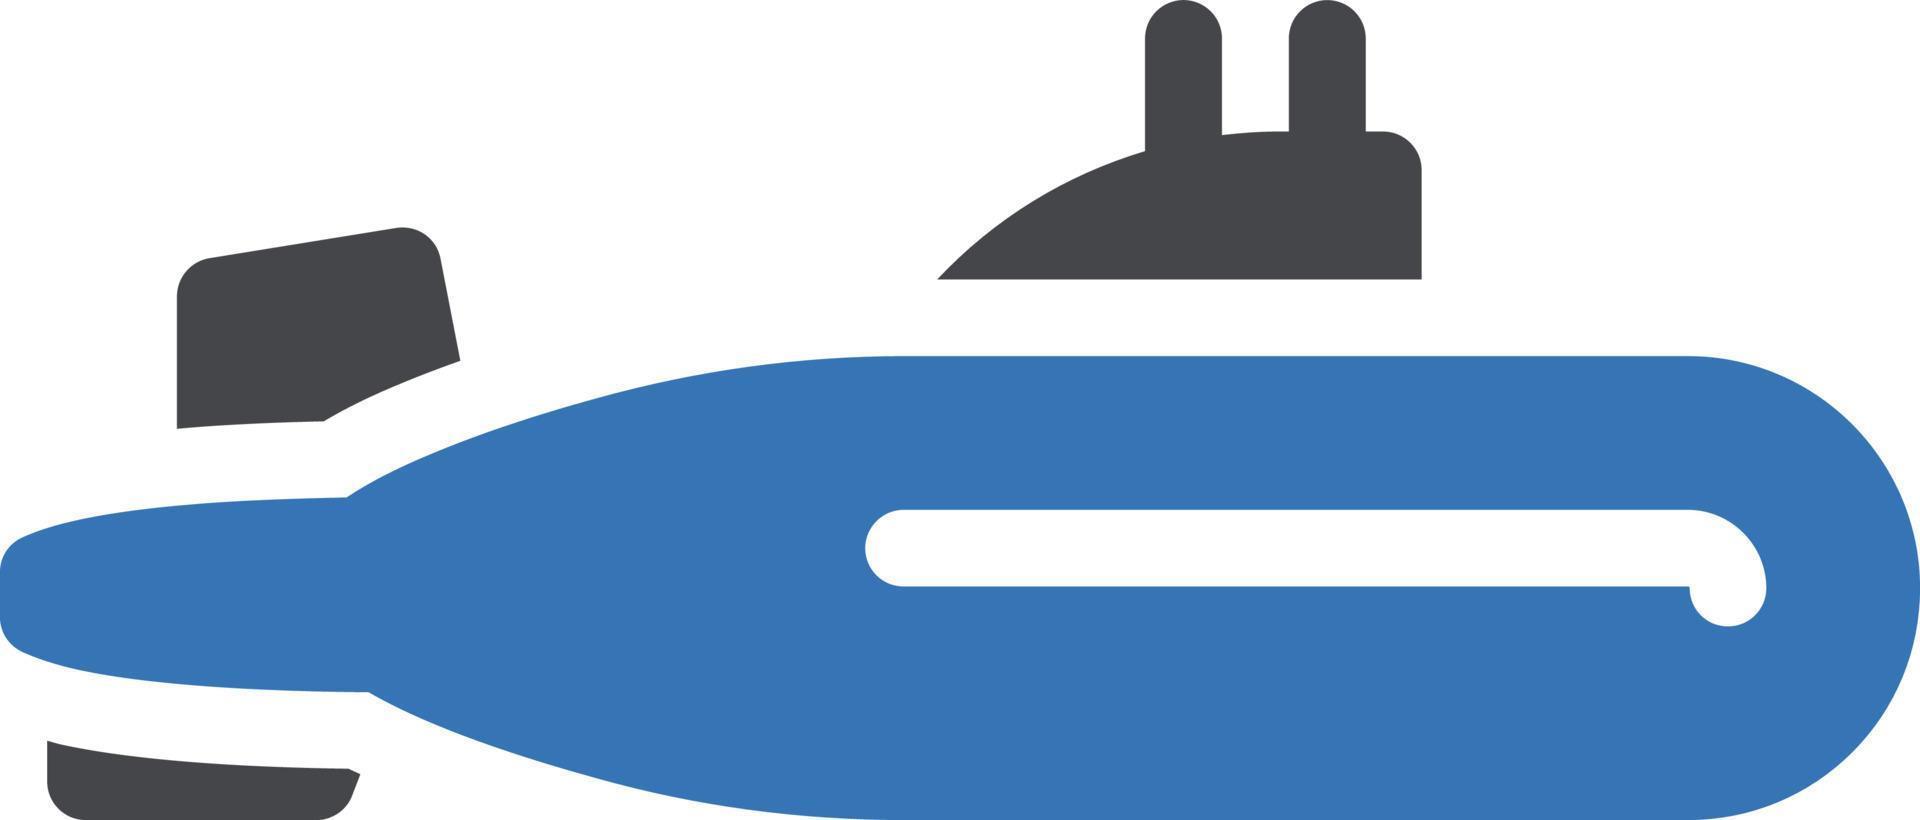 illustrazione vettoriale sottomarino su uno sfondo. simboli di qualità premium. icone vettoriali per il concetto o la progettazione grafica